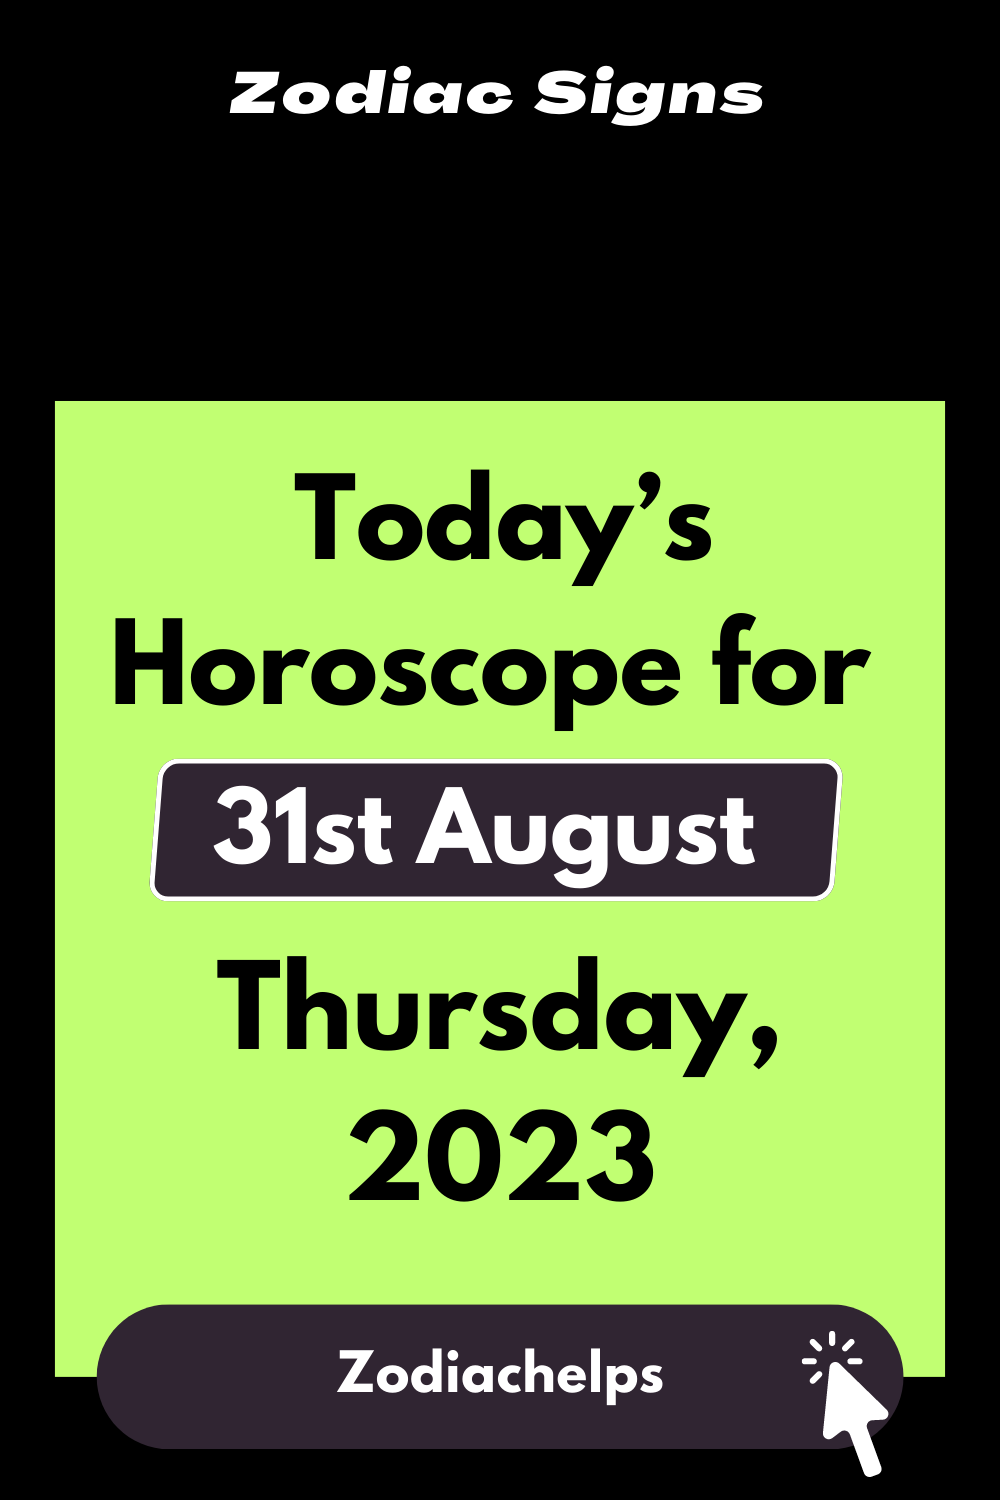 Today’s Horoscope for 31st August Thursday, 2023